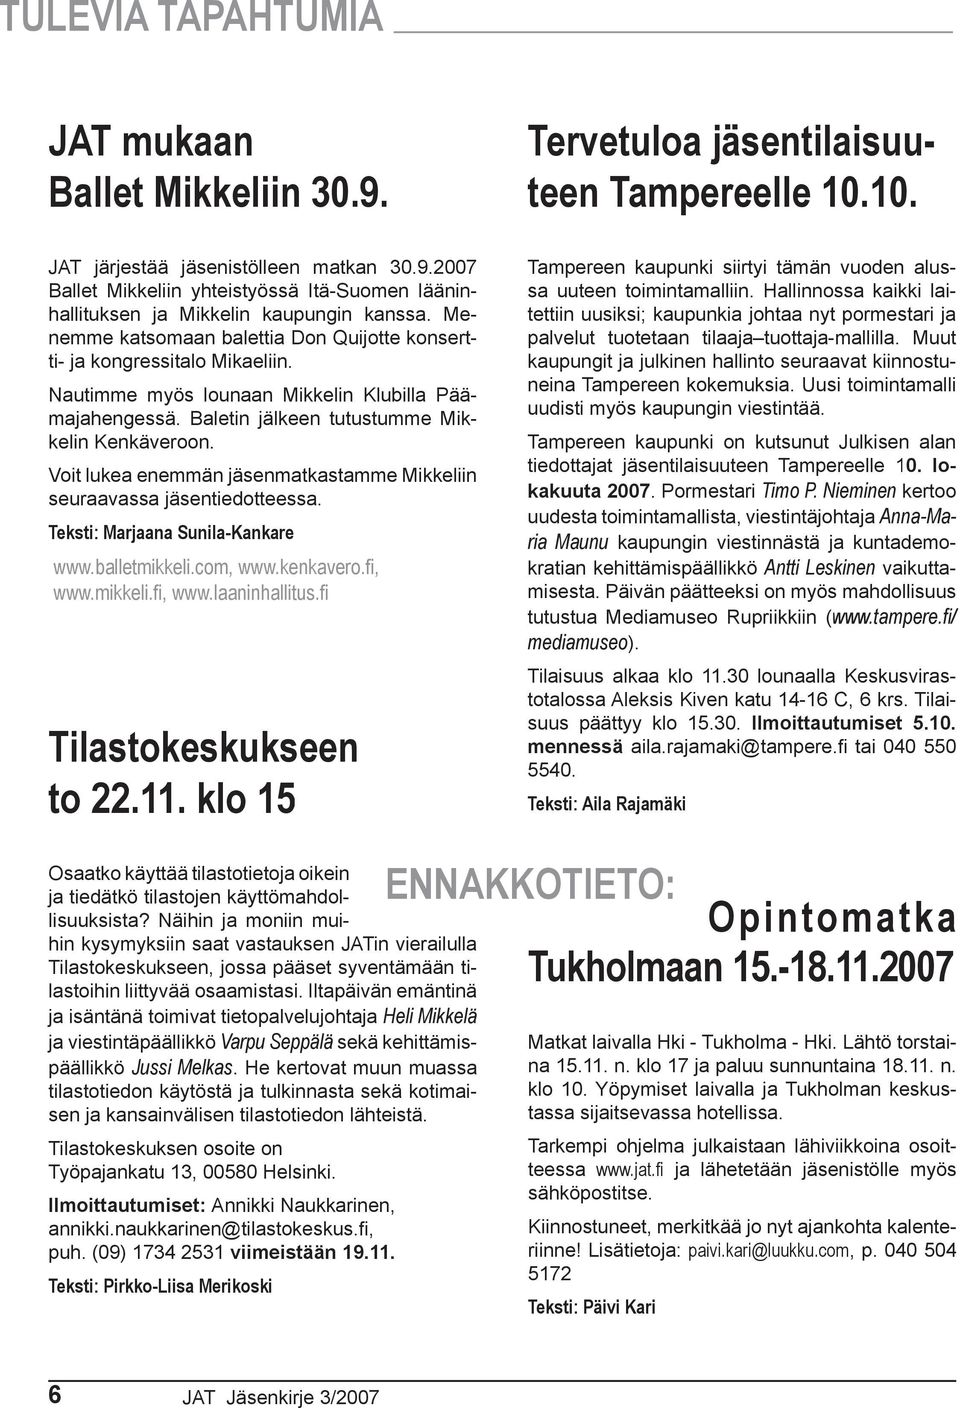 Voit lukea enemmän jäsenmatkastamme Mikkeliin seuraavassa jäsentiedotteessa. Teksti: Marjaana Sunila-Kankare www.balletmikkeli.com, www.kenkavero.fi, www.mikkeli.fi, www.laaninhallitus.